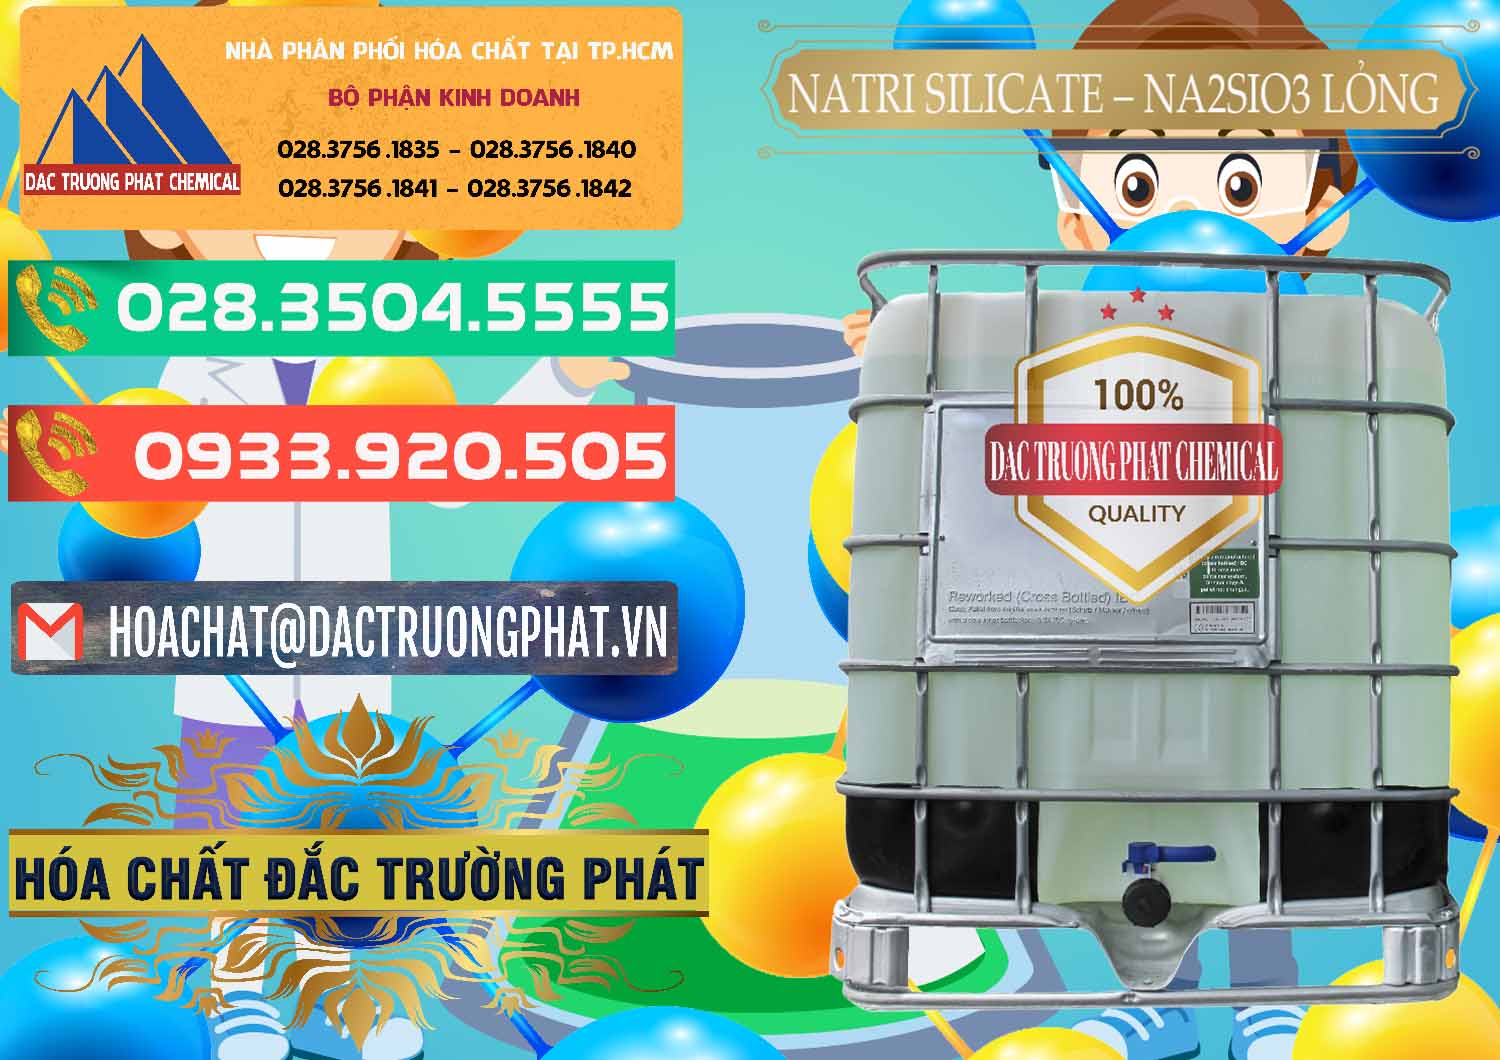 Cty chuyên kinh doanh & bán Natri Silicate - Na2SiO3 - Keo Silicate Lỏng Việt Nam - 0191 - Nơi phân phối _ cung cấp hóa chất tại TP.HCM - congtyhoachat.com.vn